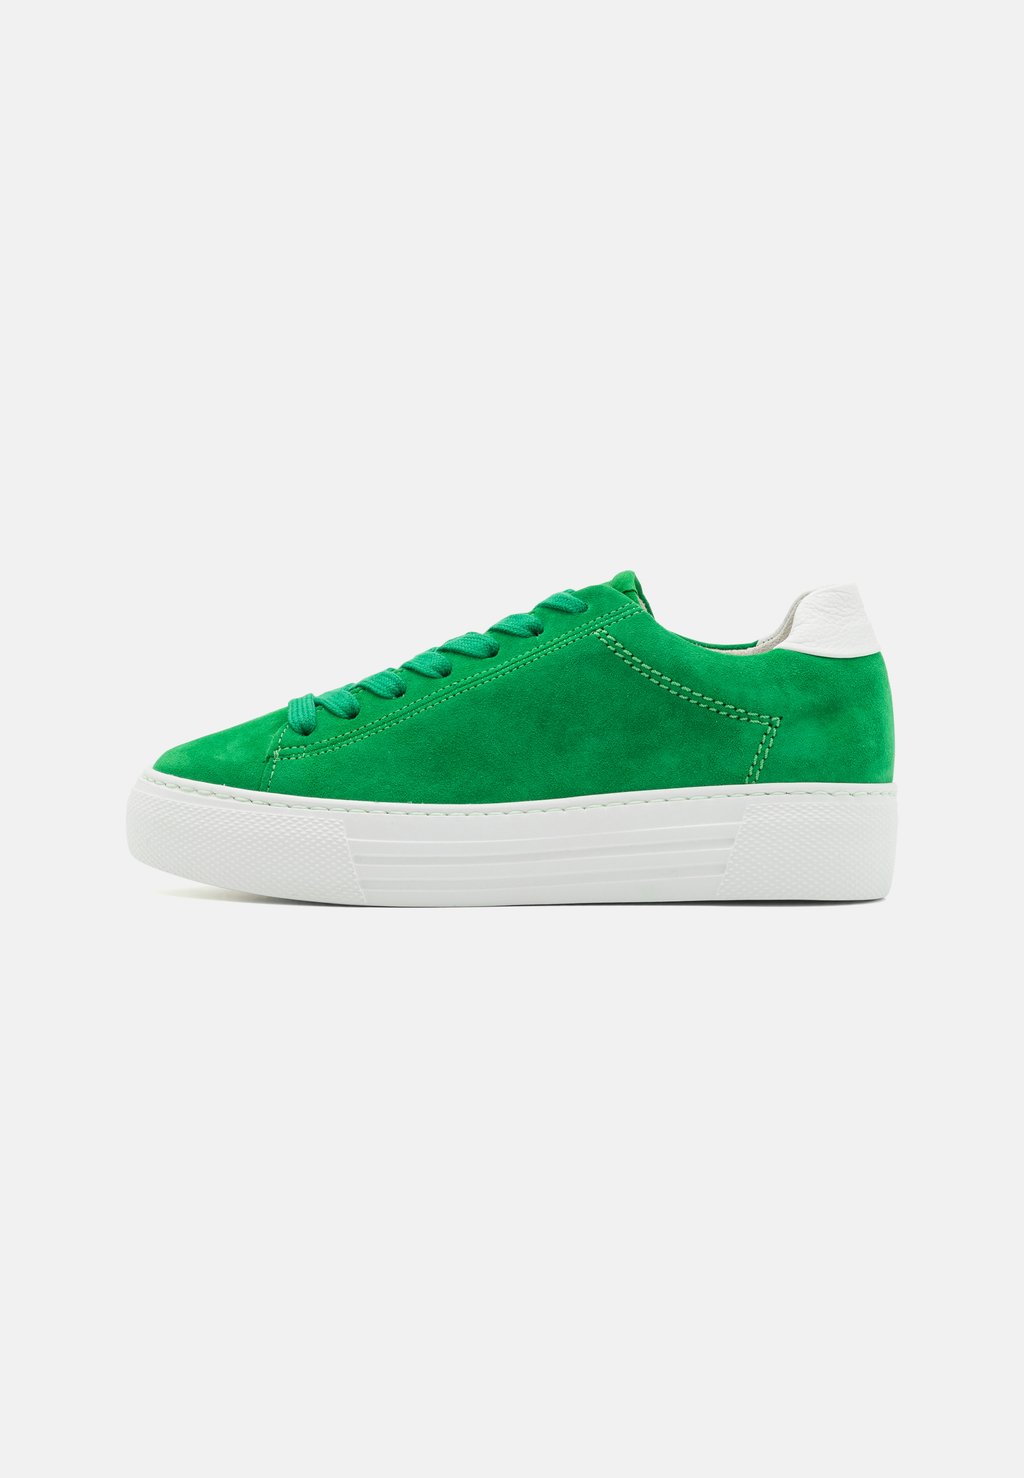 Низкие кроссовки Gabor Comfort, зеленые кроссовки низкие gabor comfort цвет azur